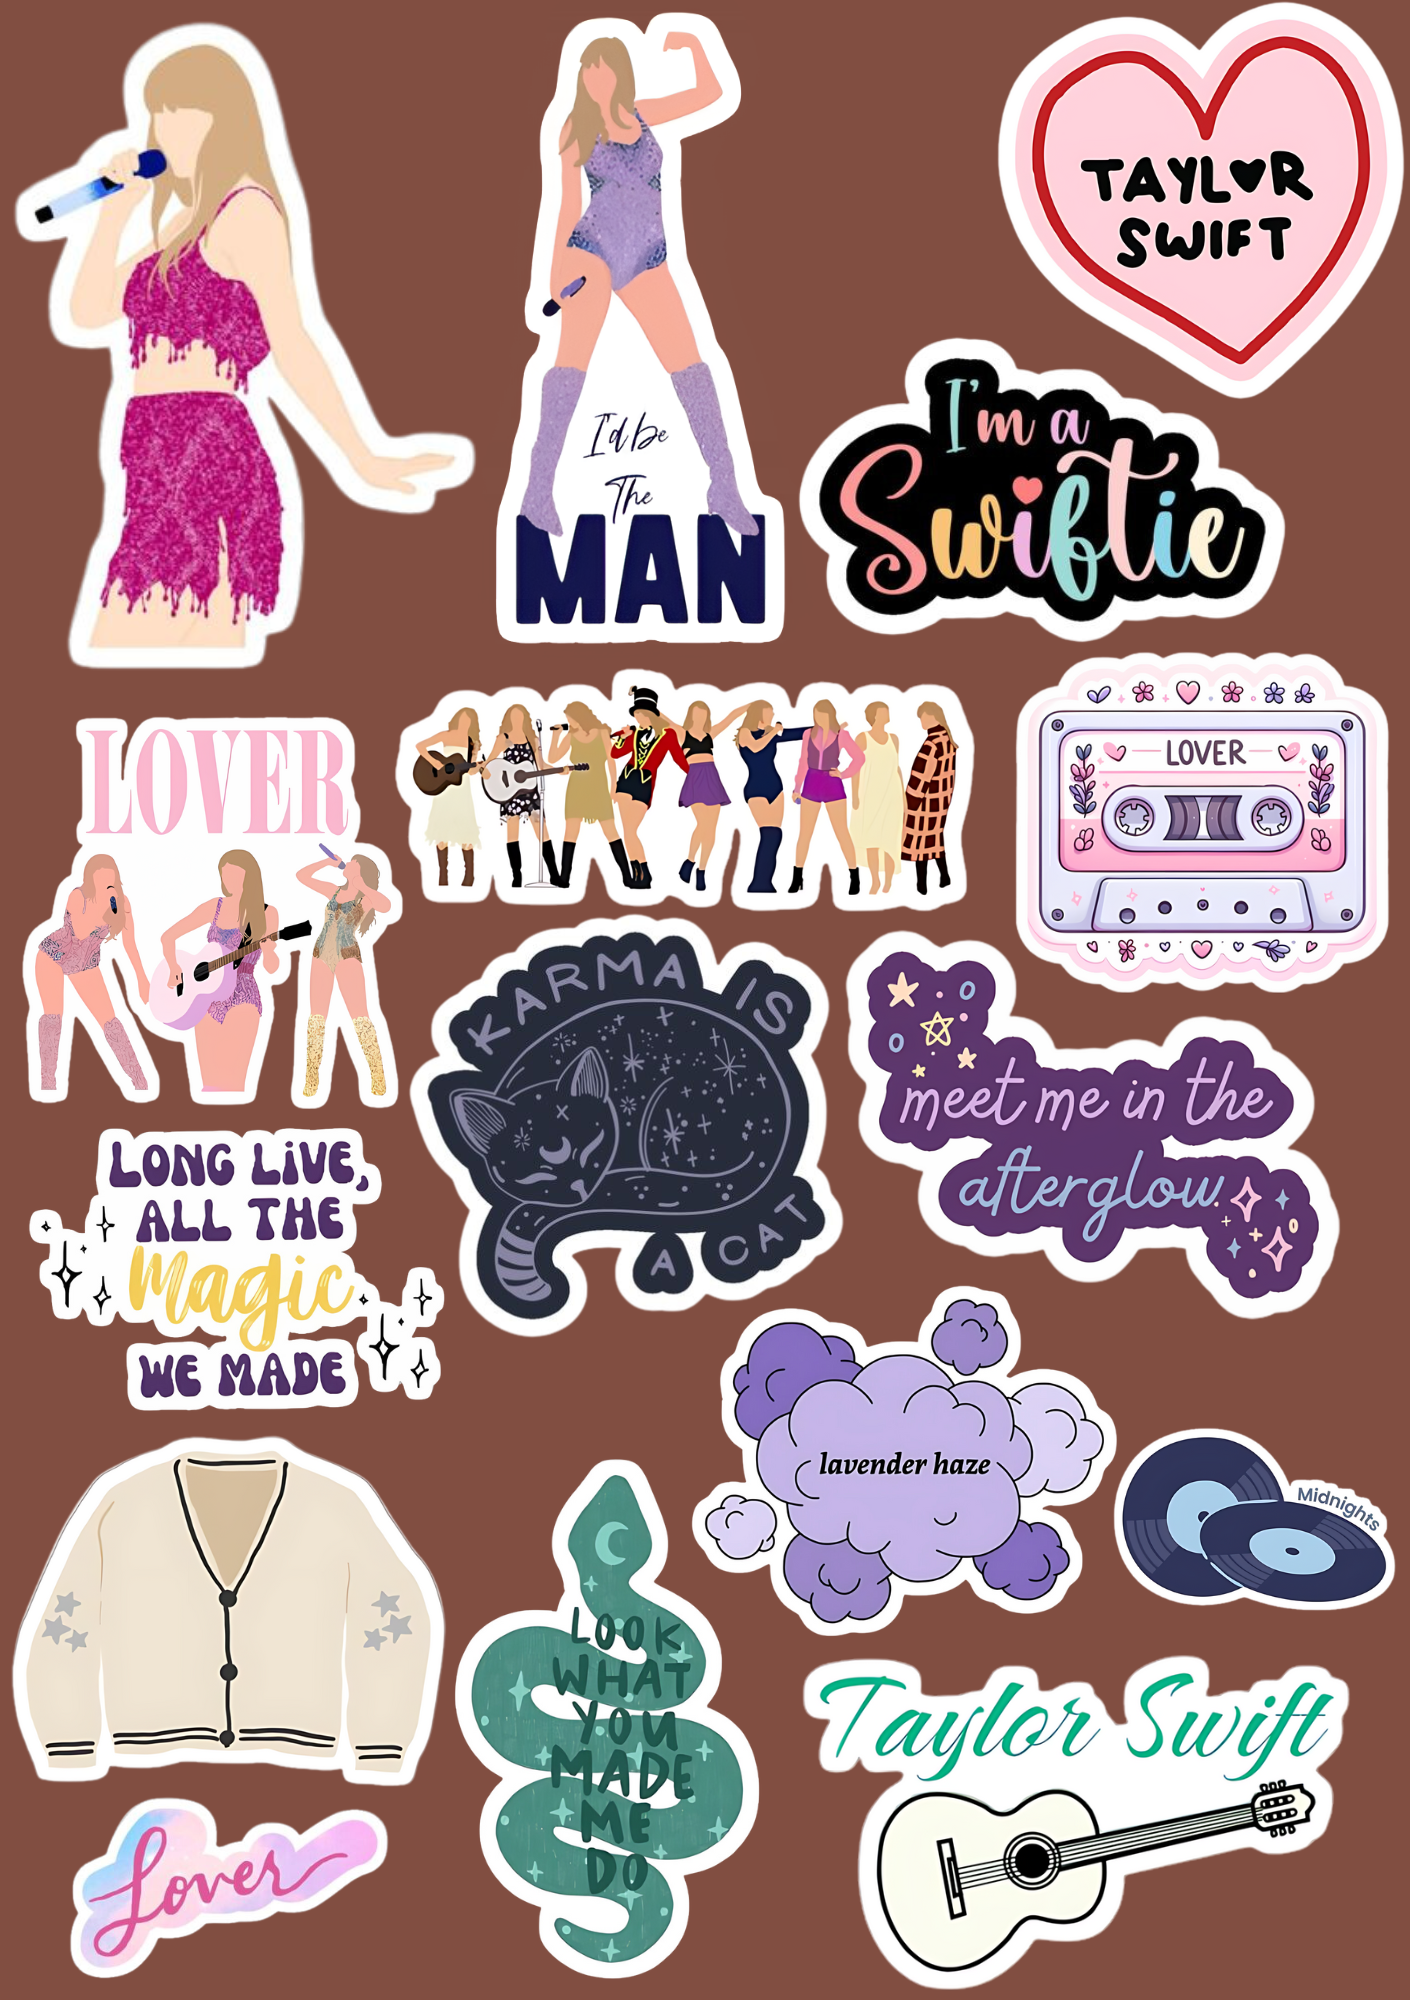 Swifty – Taylor Swift Sticker Sheet